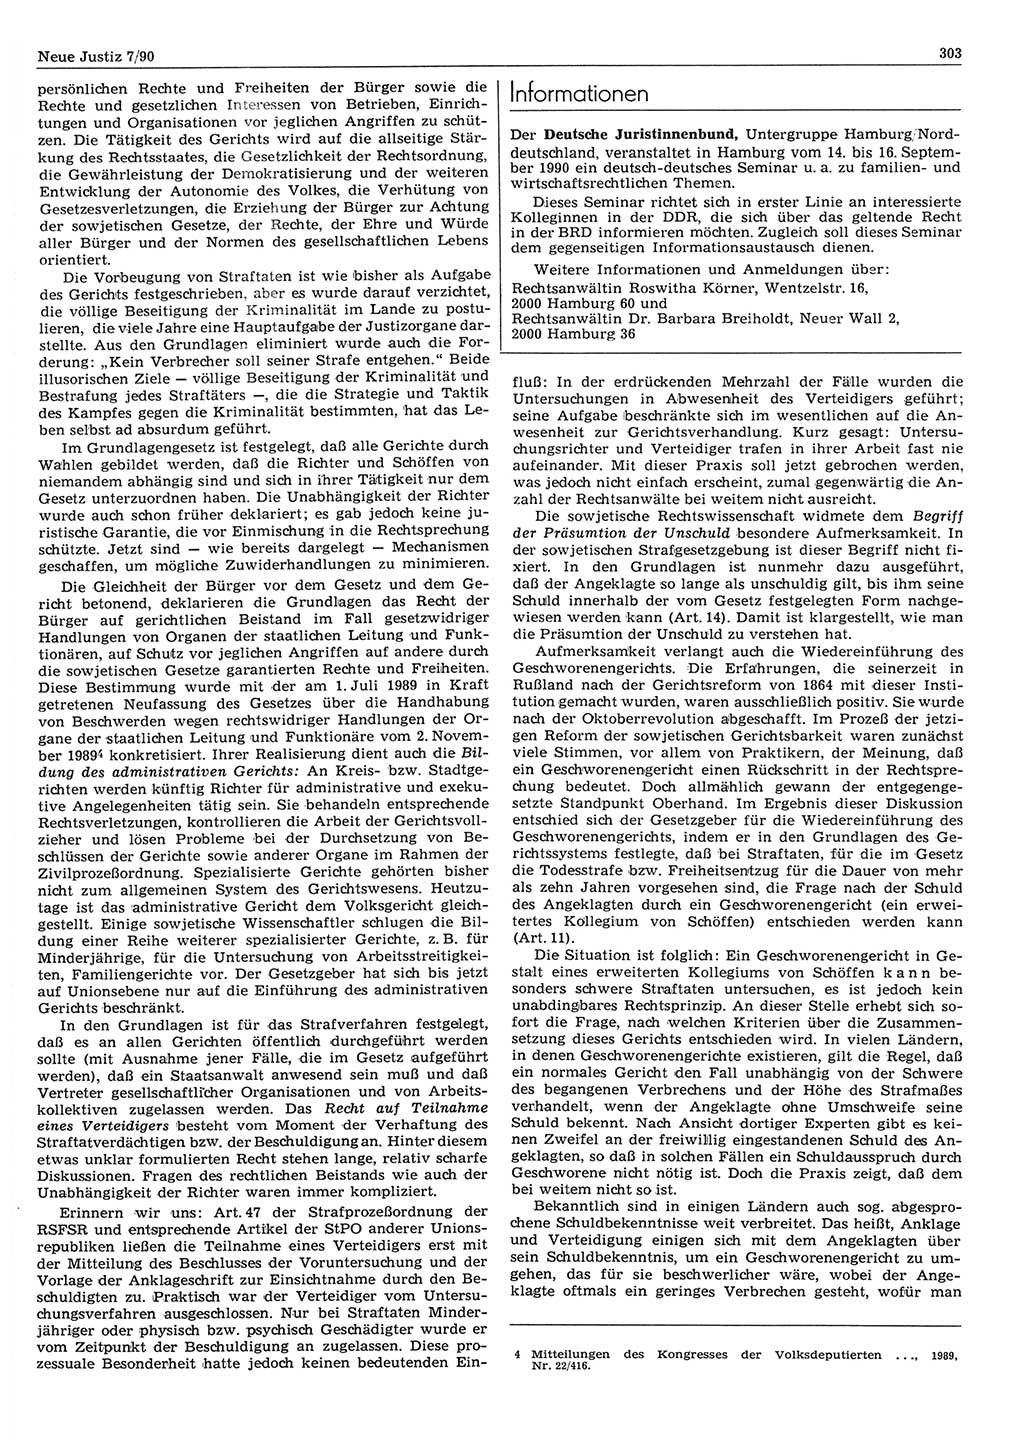 Neue Justiz (NJ), Zeitschrift für Rechtsetzung und Rechtsanwendung [Deutsche Demokratische Republik (DDR)], 44. Jahrgang 1990, Seite 303 (NJ DDR 1990, S. 303)